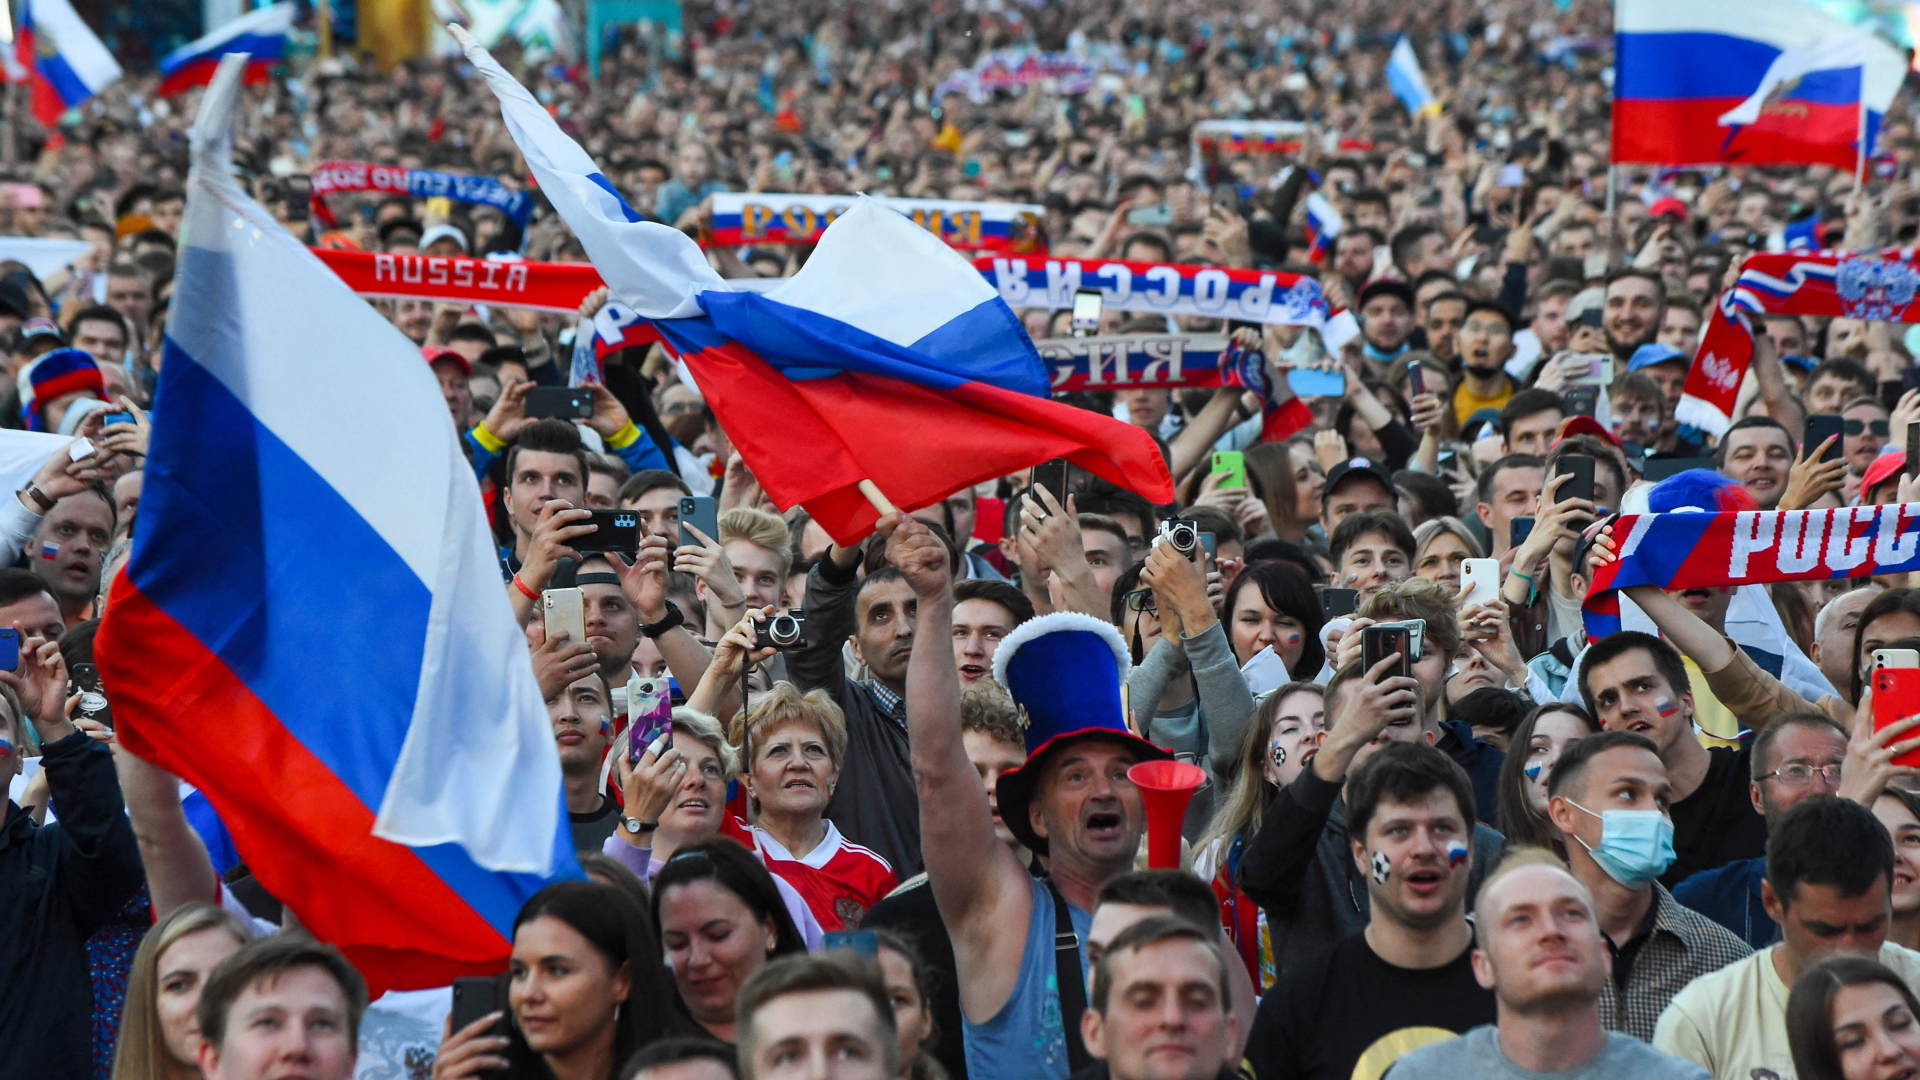 Russische Fußballfans vor dem EM-Fußballspiel in Sankt Petersburg - kaum jemand von ihnen trägt Maske. | AFP